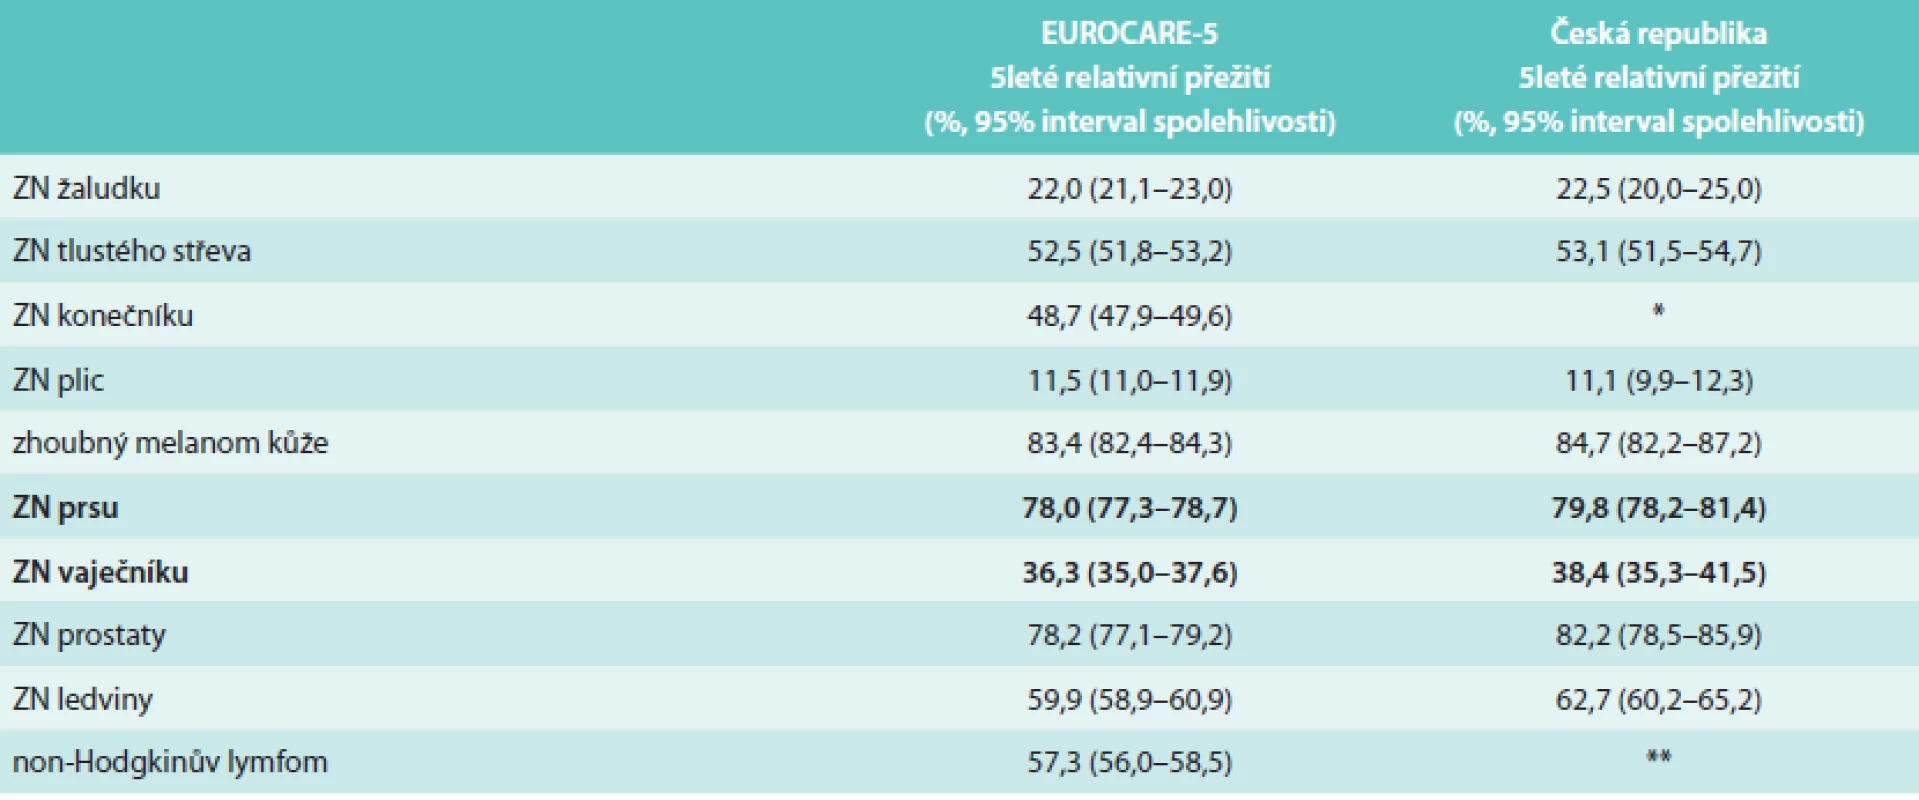 Srovnání 5letého relativního přežití u onkologických pacientů v České republice (období 2005–2008 [7]) se studií EUROCARE-5 (období 2000–2007 [8])